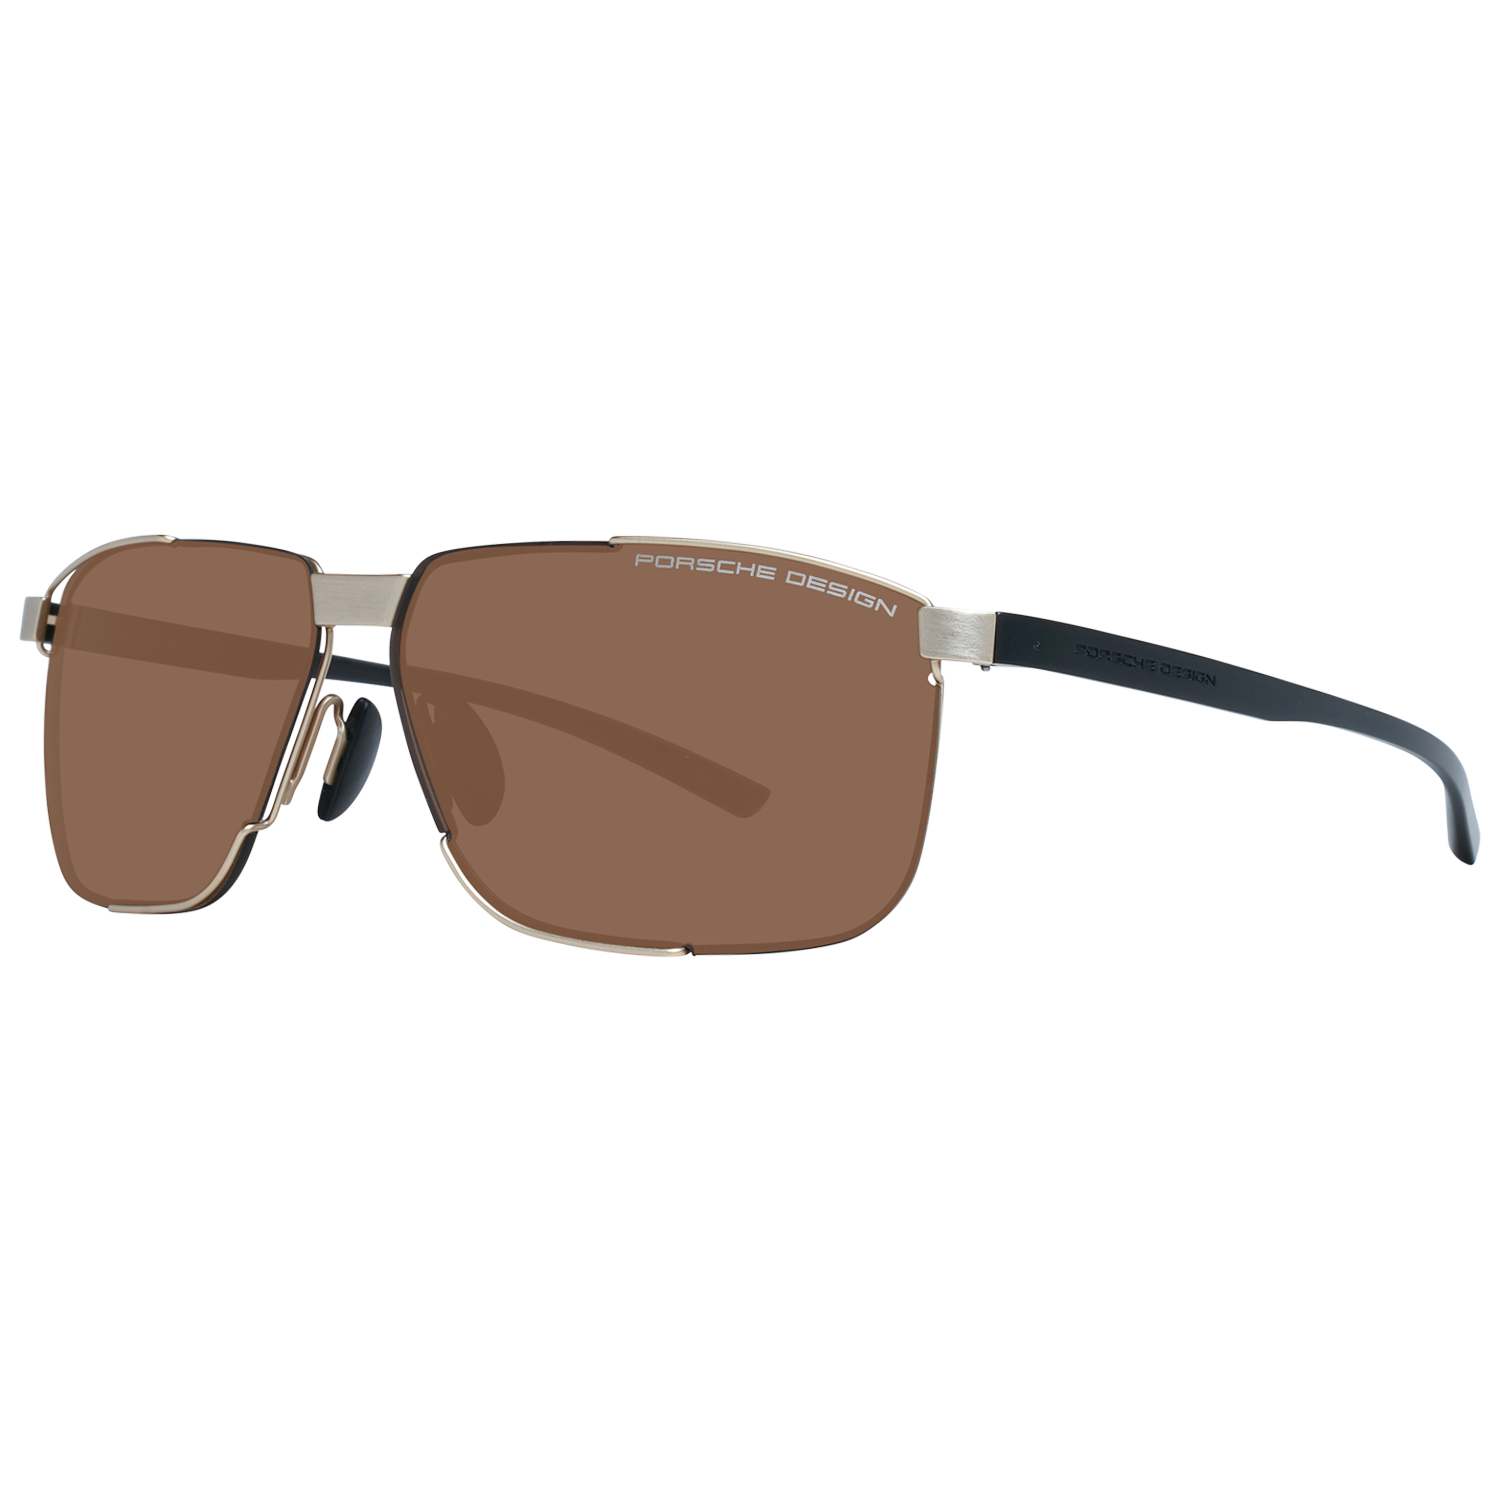 Porsche Design Sunglasses Porsche Design Sunglasses P8680 B 64 Eyeglasses Eyewear UK USA Australia 